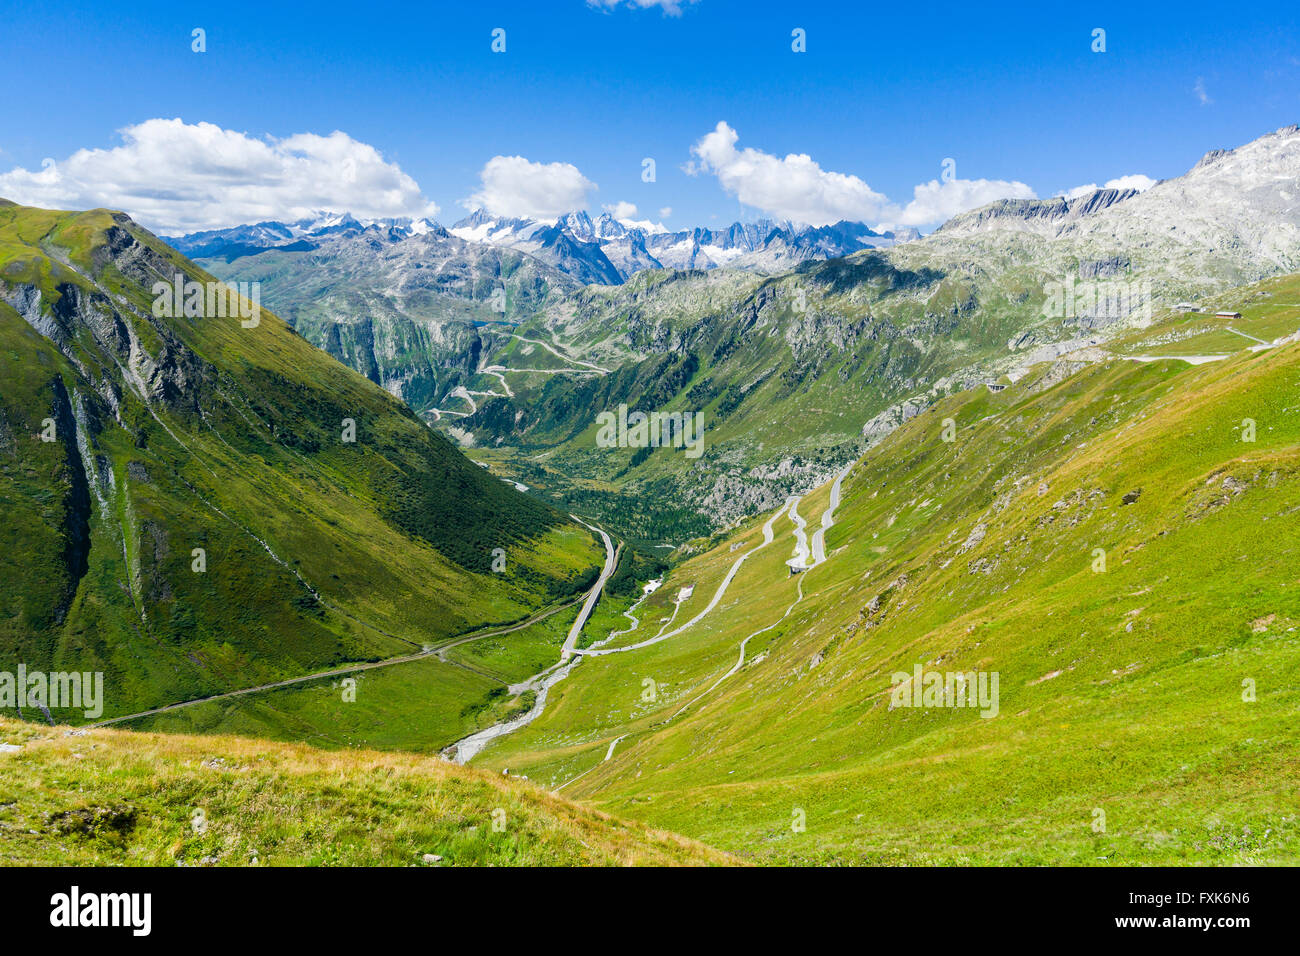 Strada che conduce a Furka Pass la liquidazione di un verde pendio di montagna, alte montagne in distanza, Andermatt, Uri, Svizzera Foto Stock